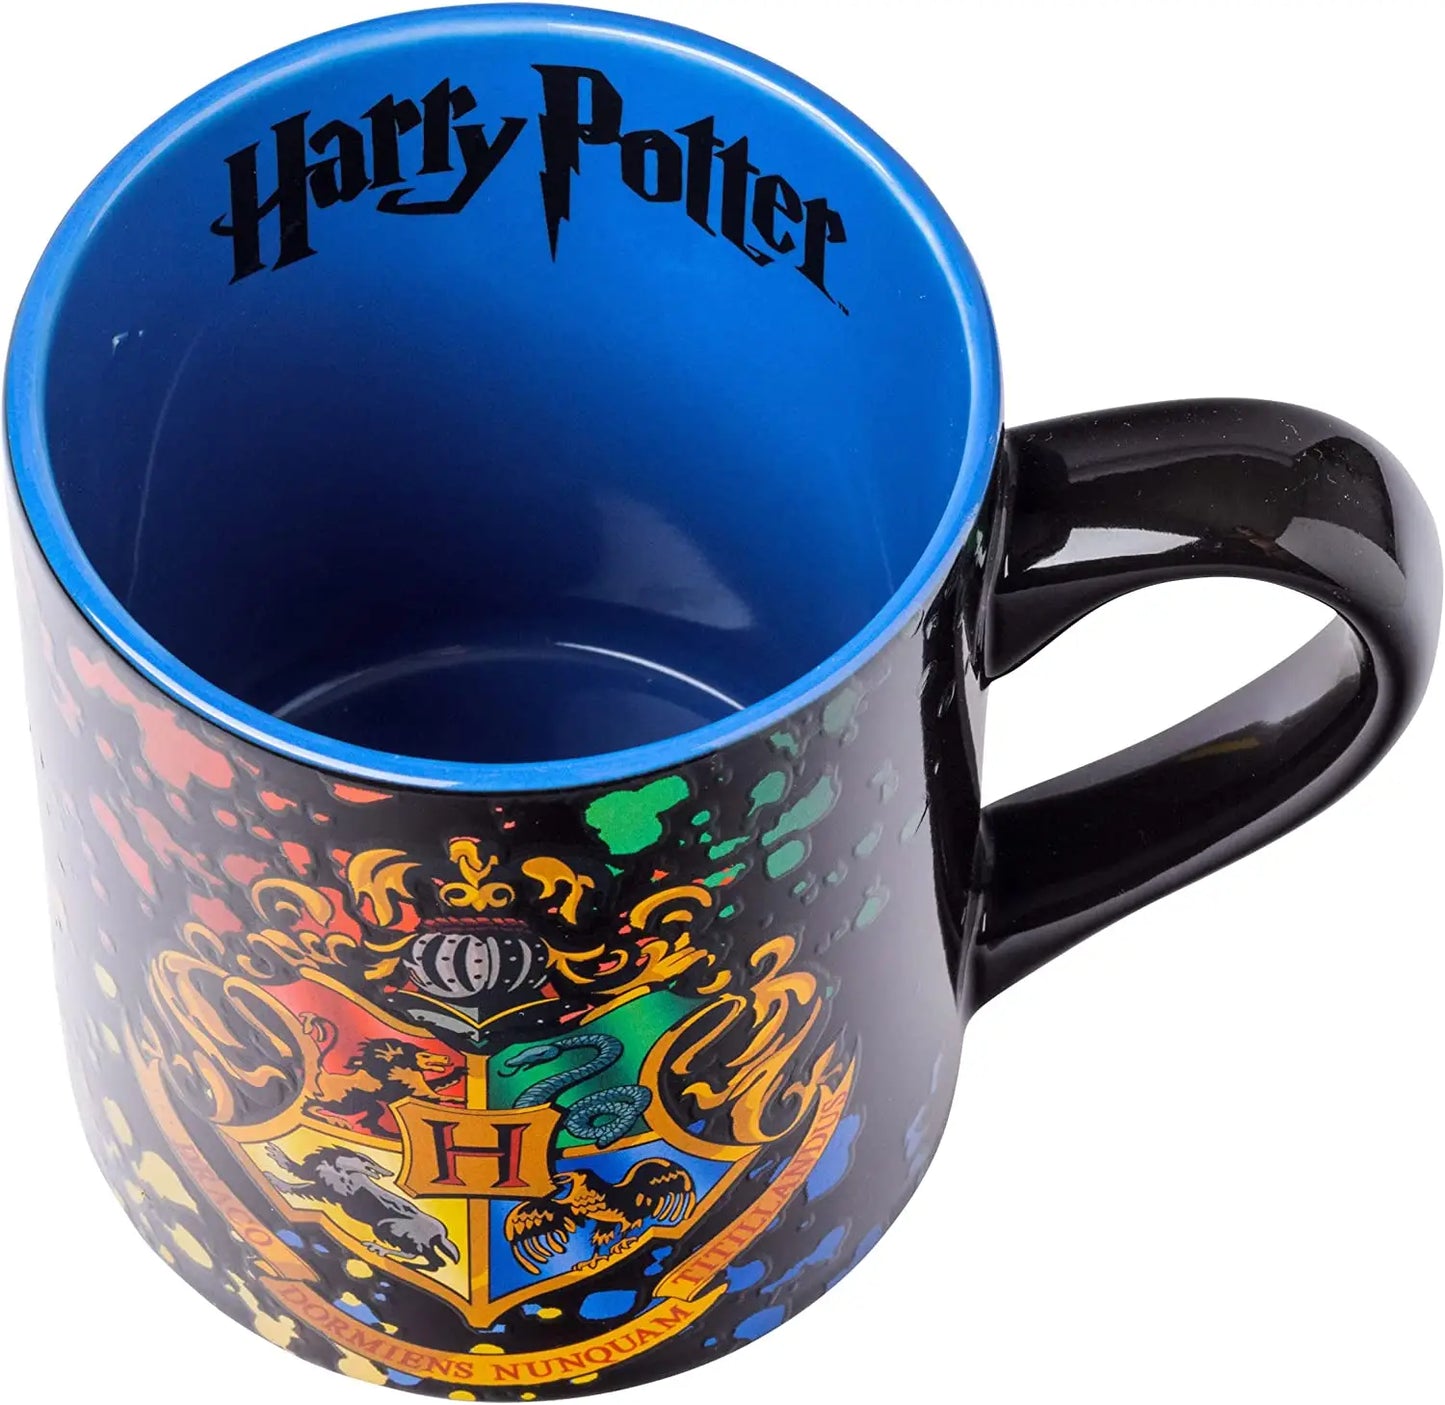 Harry Potter Hogwarts Full Crest 14oz Laser Etched Holographic Ceramic Mug Top View